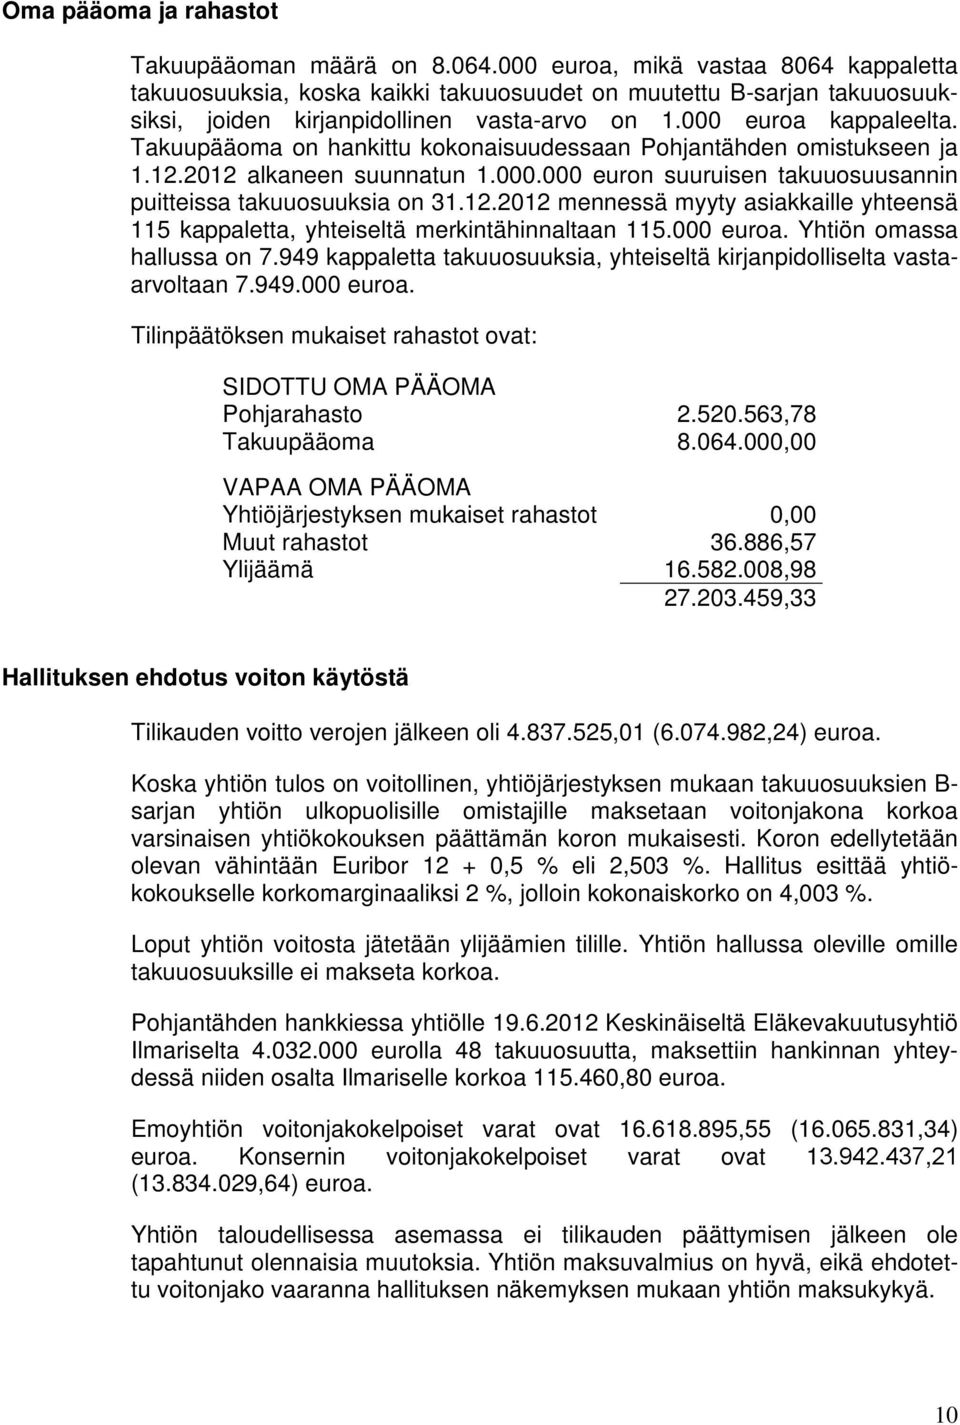 Takuupääoma on hankittu kokonaisuudessaan Pohjantähden omistukseen ja 1.12.2012 alkaneen suunnatun 1.000.000 euron suuruisen takuuosuusannin puitteissa takuuosuuksia on 31.12.2012 mennessä myyty asiakkaille yhteensä 115 kappaletta, yhteiseltä merkintähinnaltaan 115.